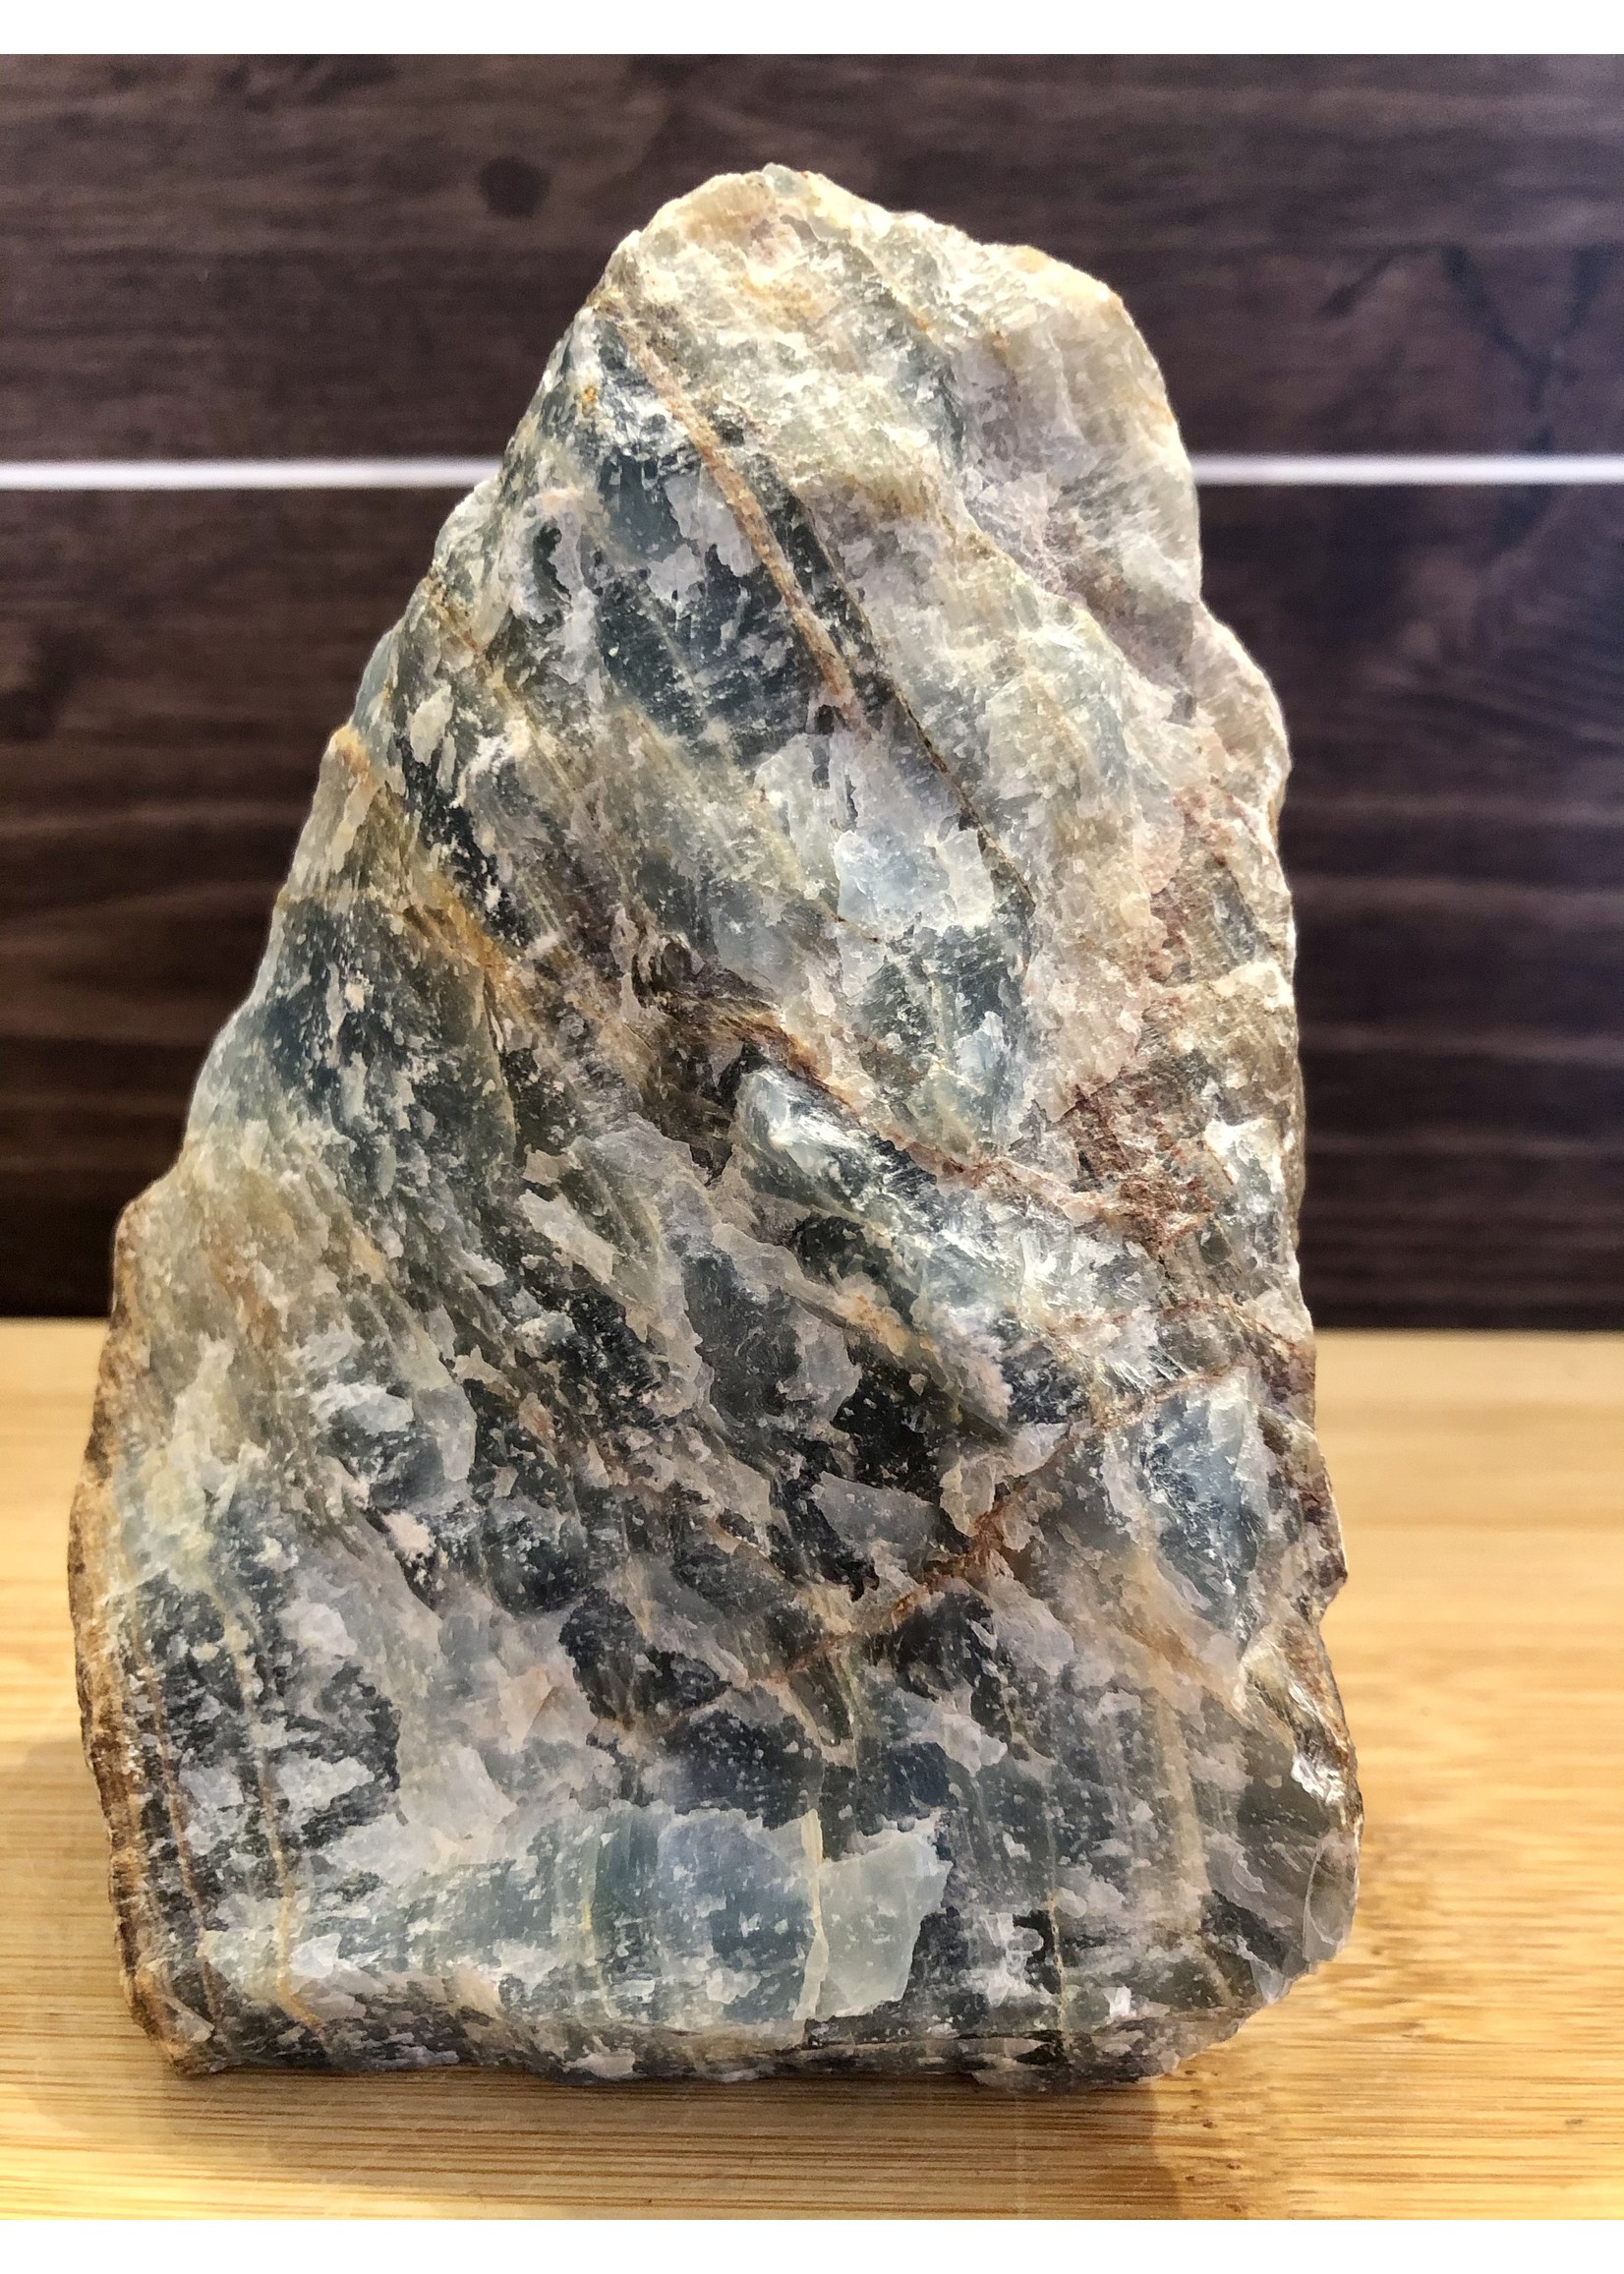 pierre onyx bleue forme libre, cristal onyx bleu poli, onyx naturelle, avec cette pierre vous irez au bout de vos projets